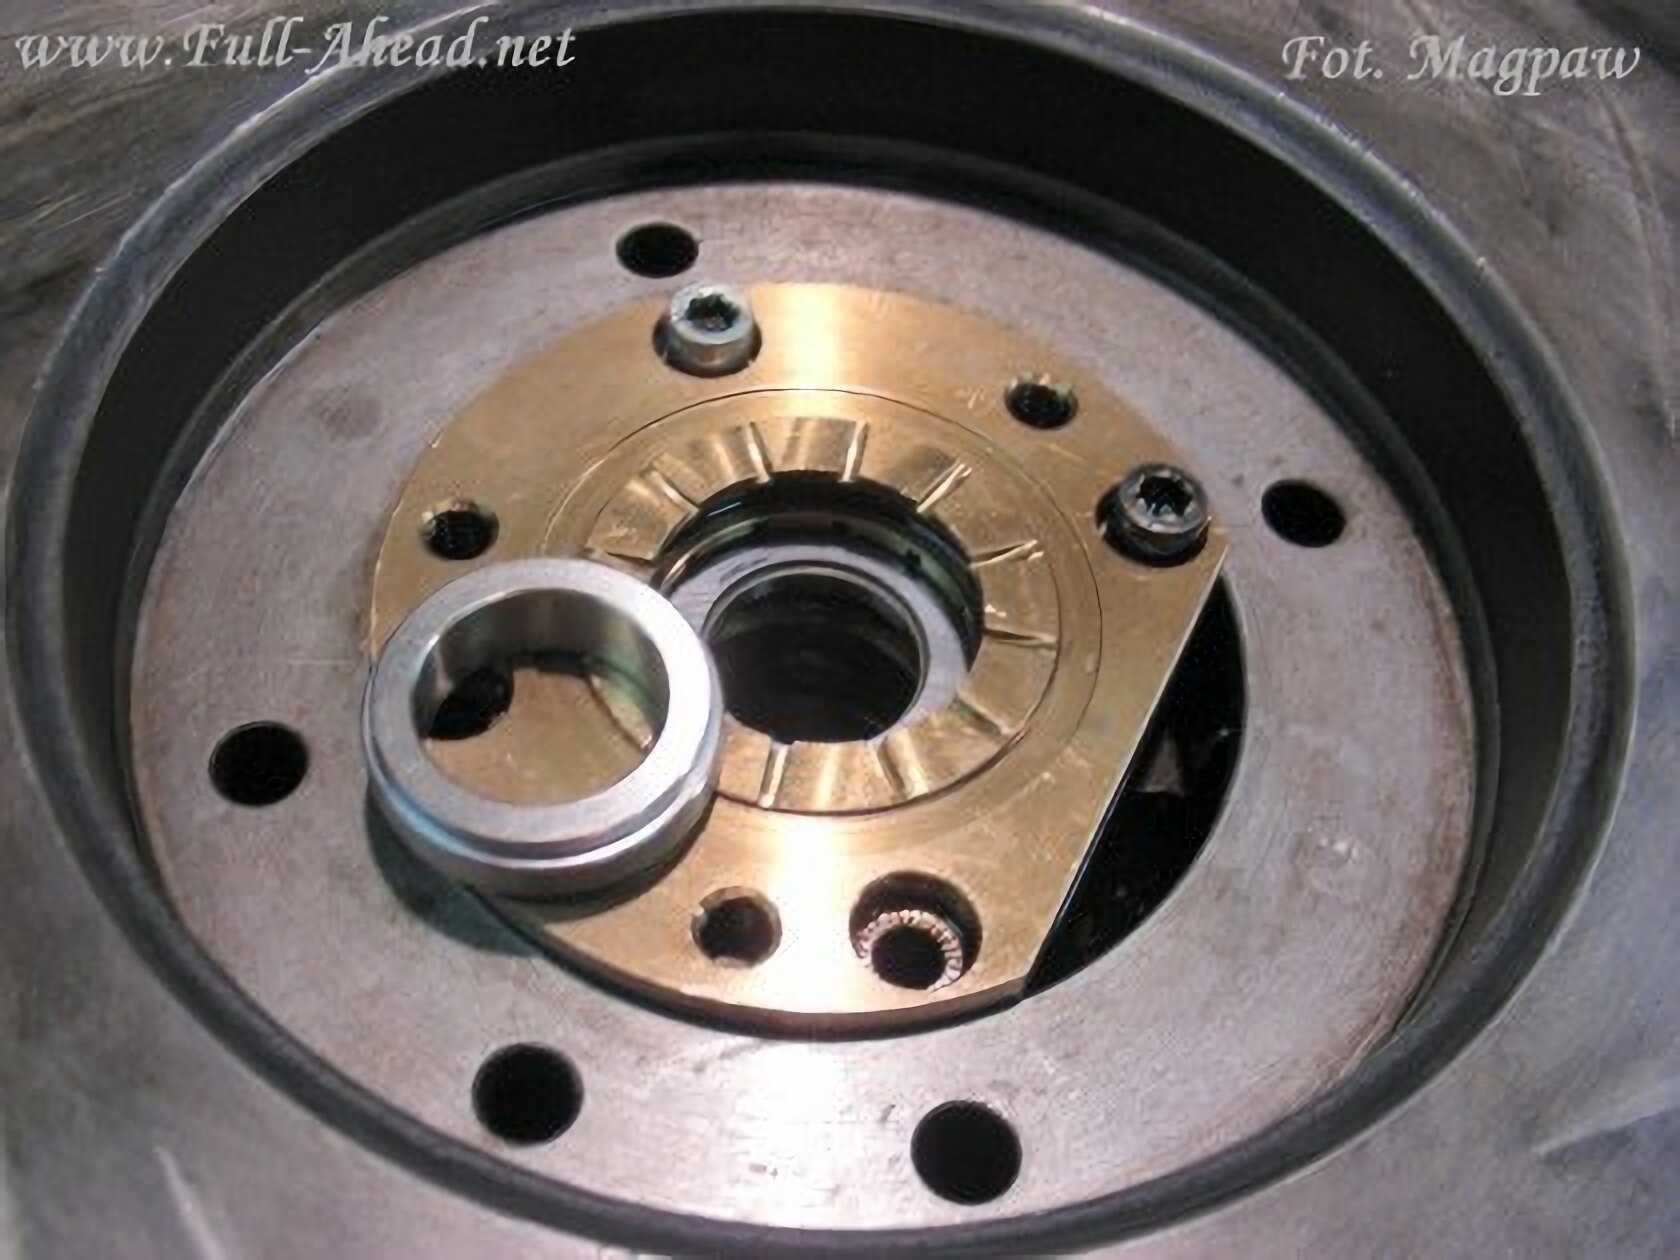 Dziewiąte zdjęcie przedstawia pierścień dystansowy leżący na części turbosprężarki od strony sprężarki.